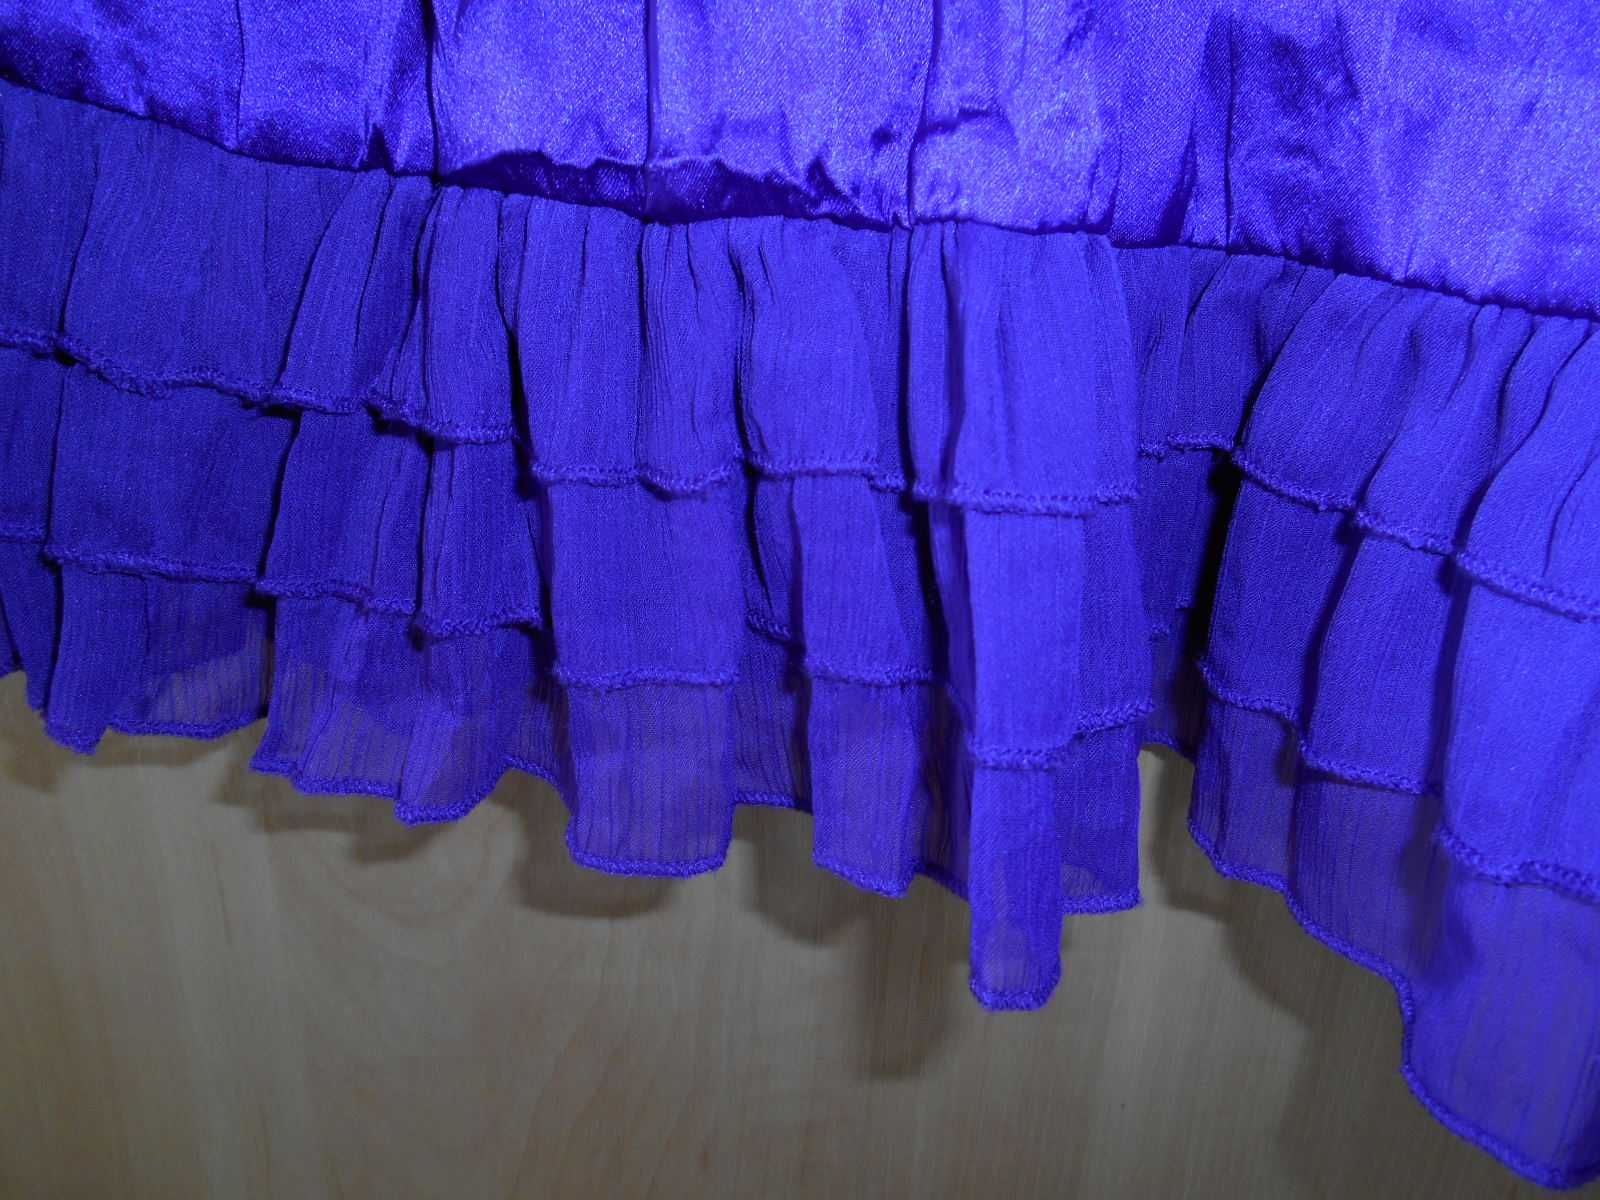 літня блузка 48-50 розміру фіолетова відкрита спинка